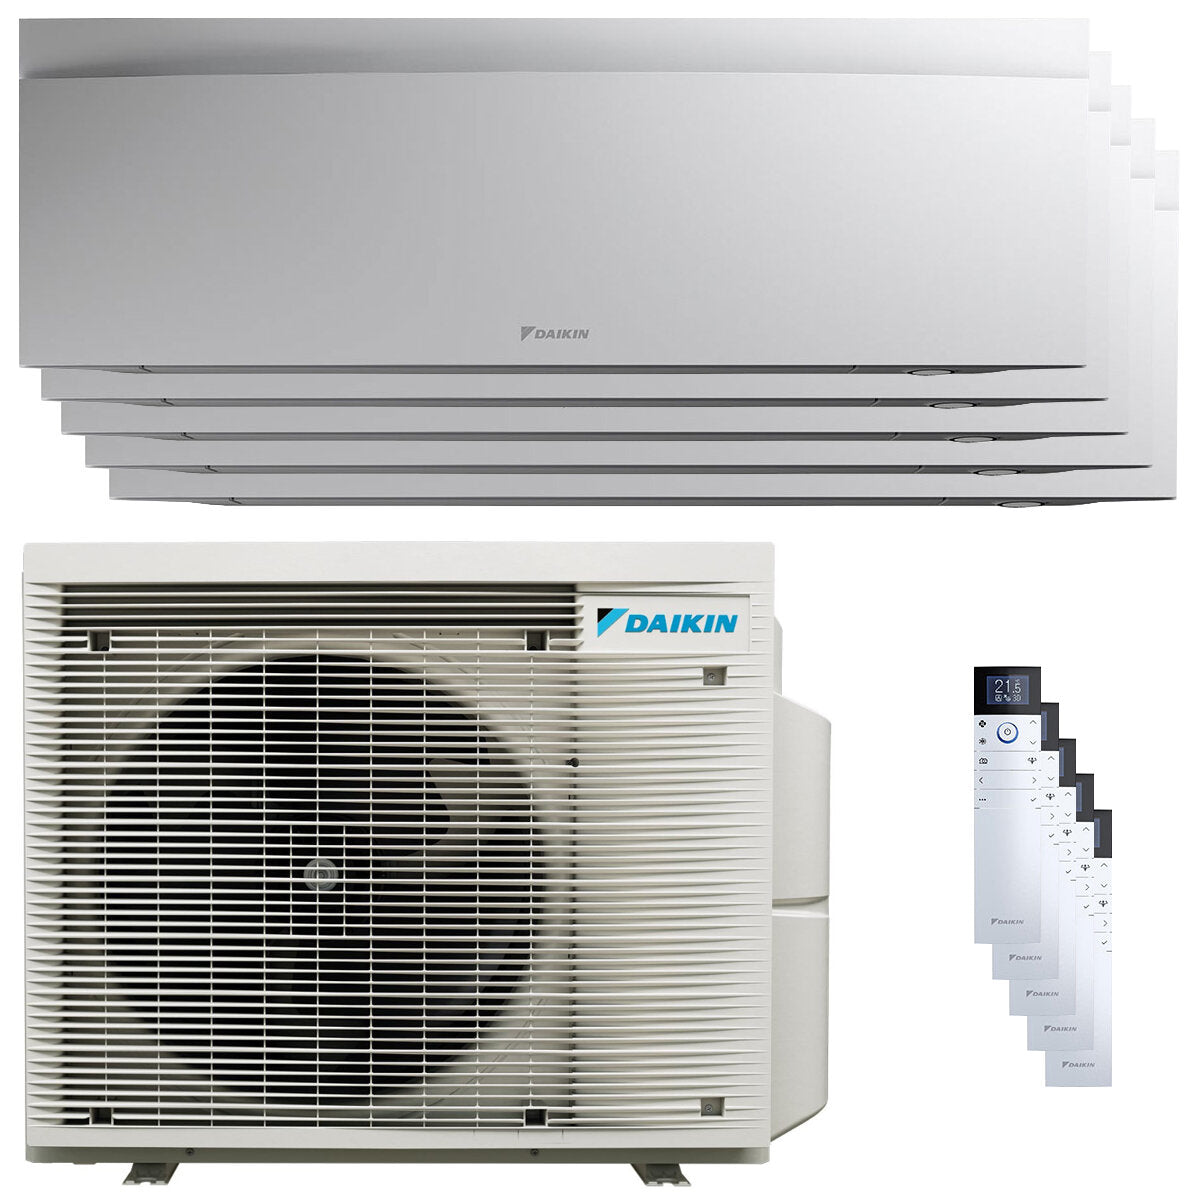 Daikin Emura 3 air conditioner penta split 9000+9000+9000+12000+12000 BTU inverter A++ wifi outdoor unit 7.8 kW White